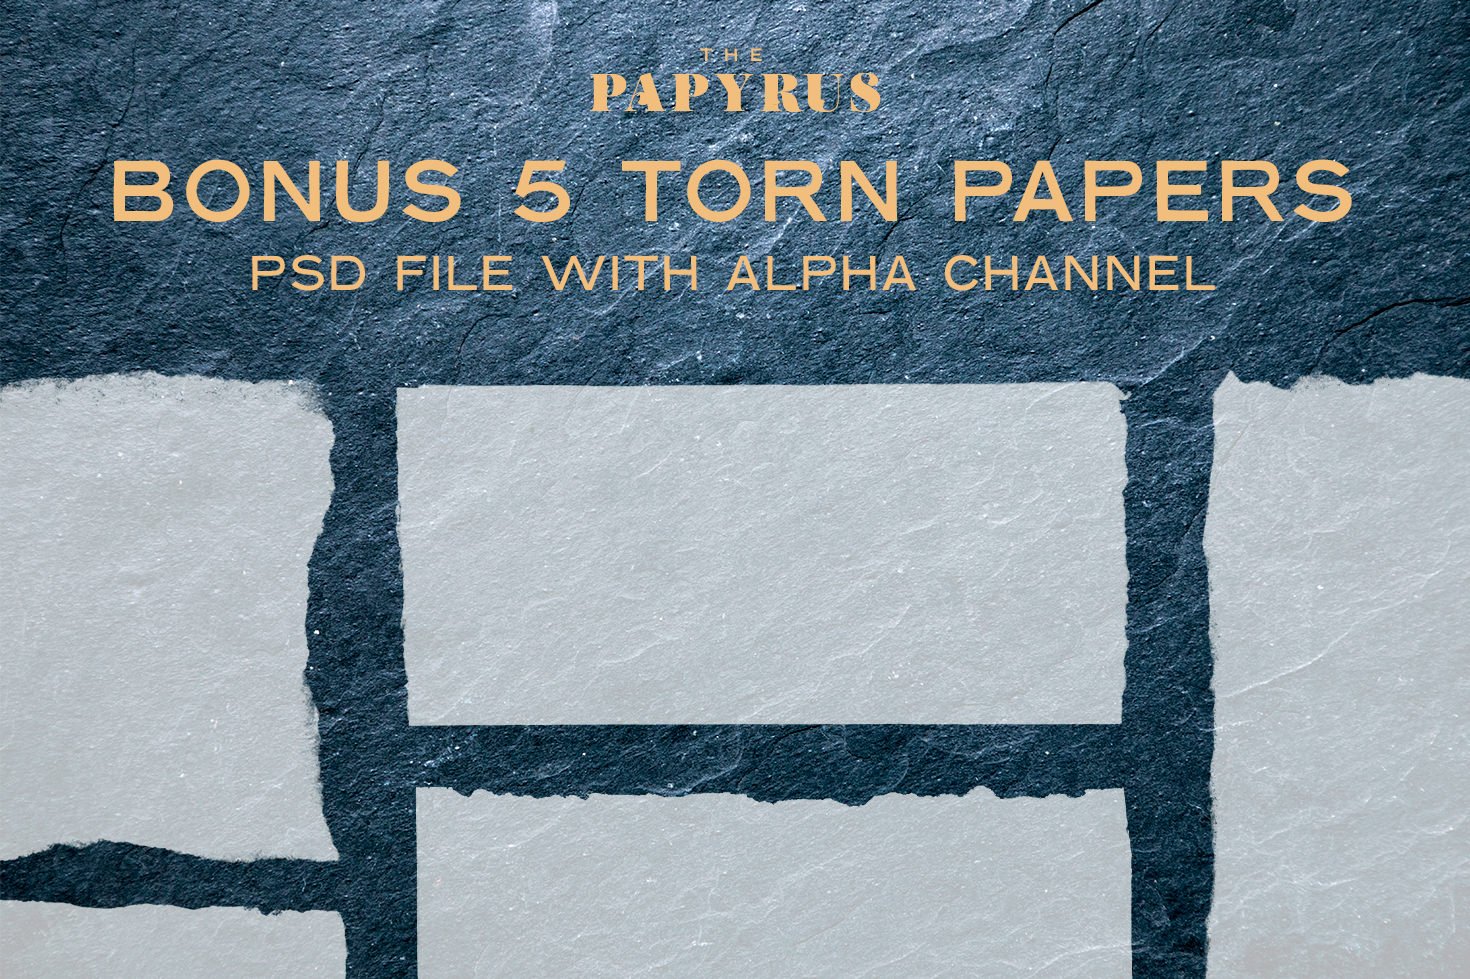 65 Paper Textures